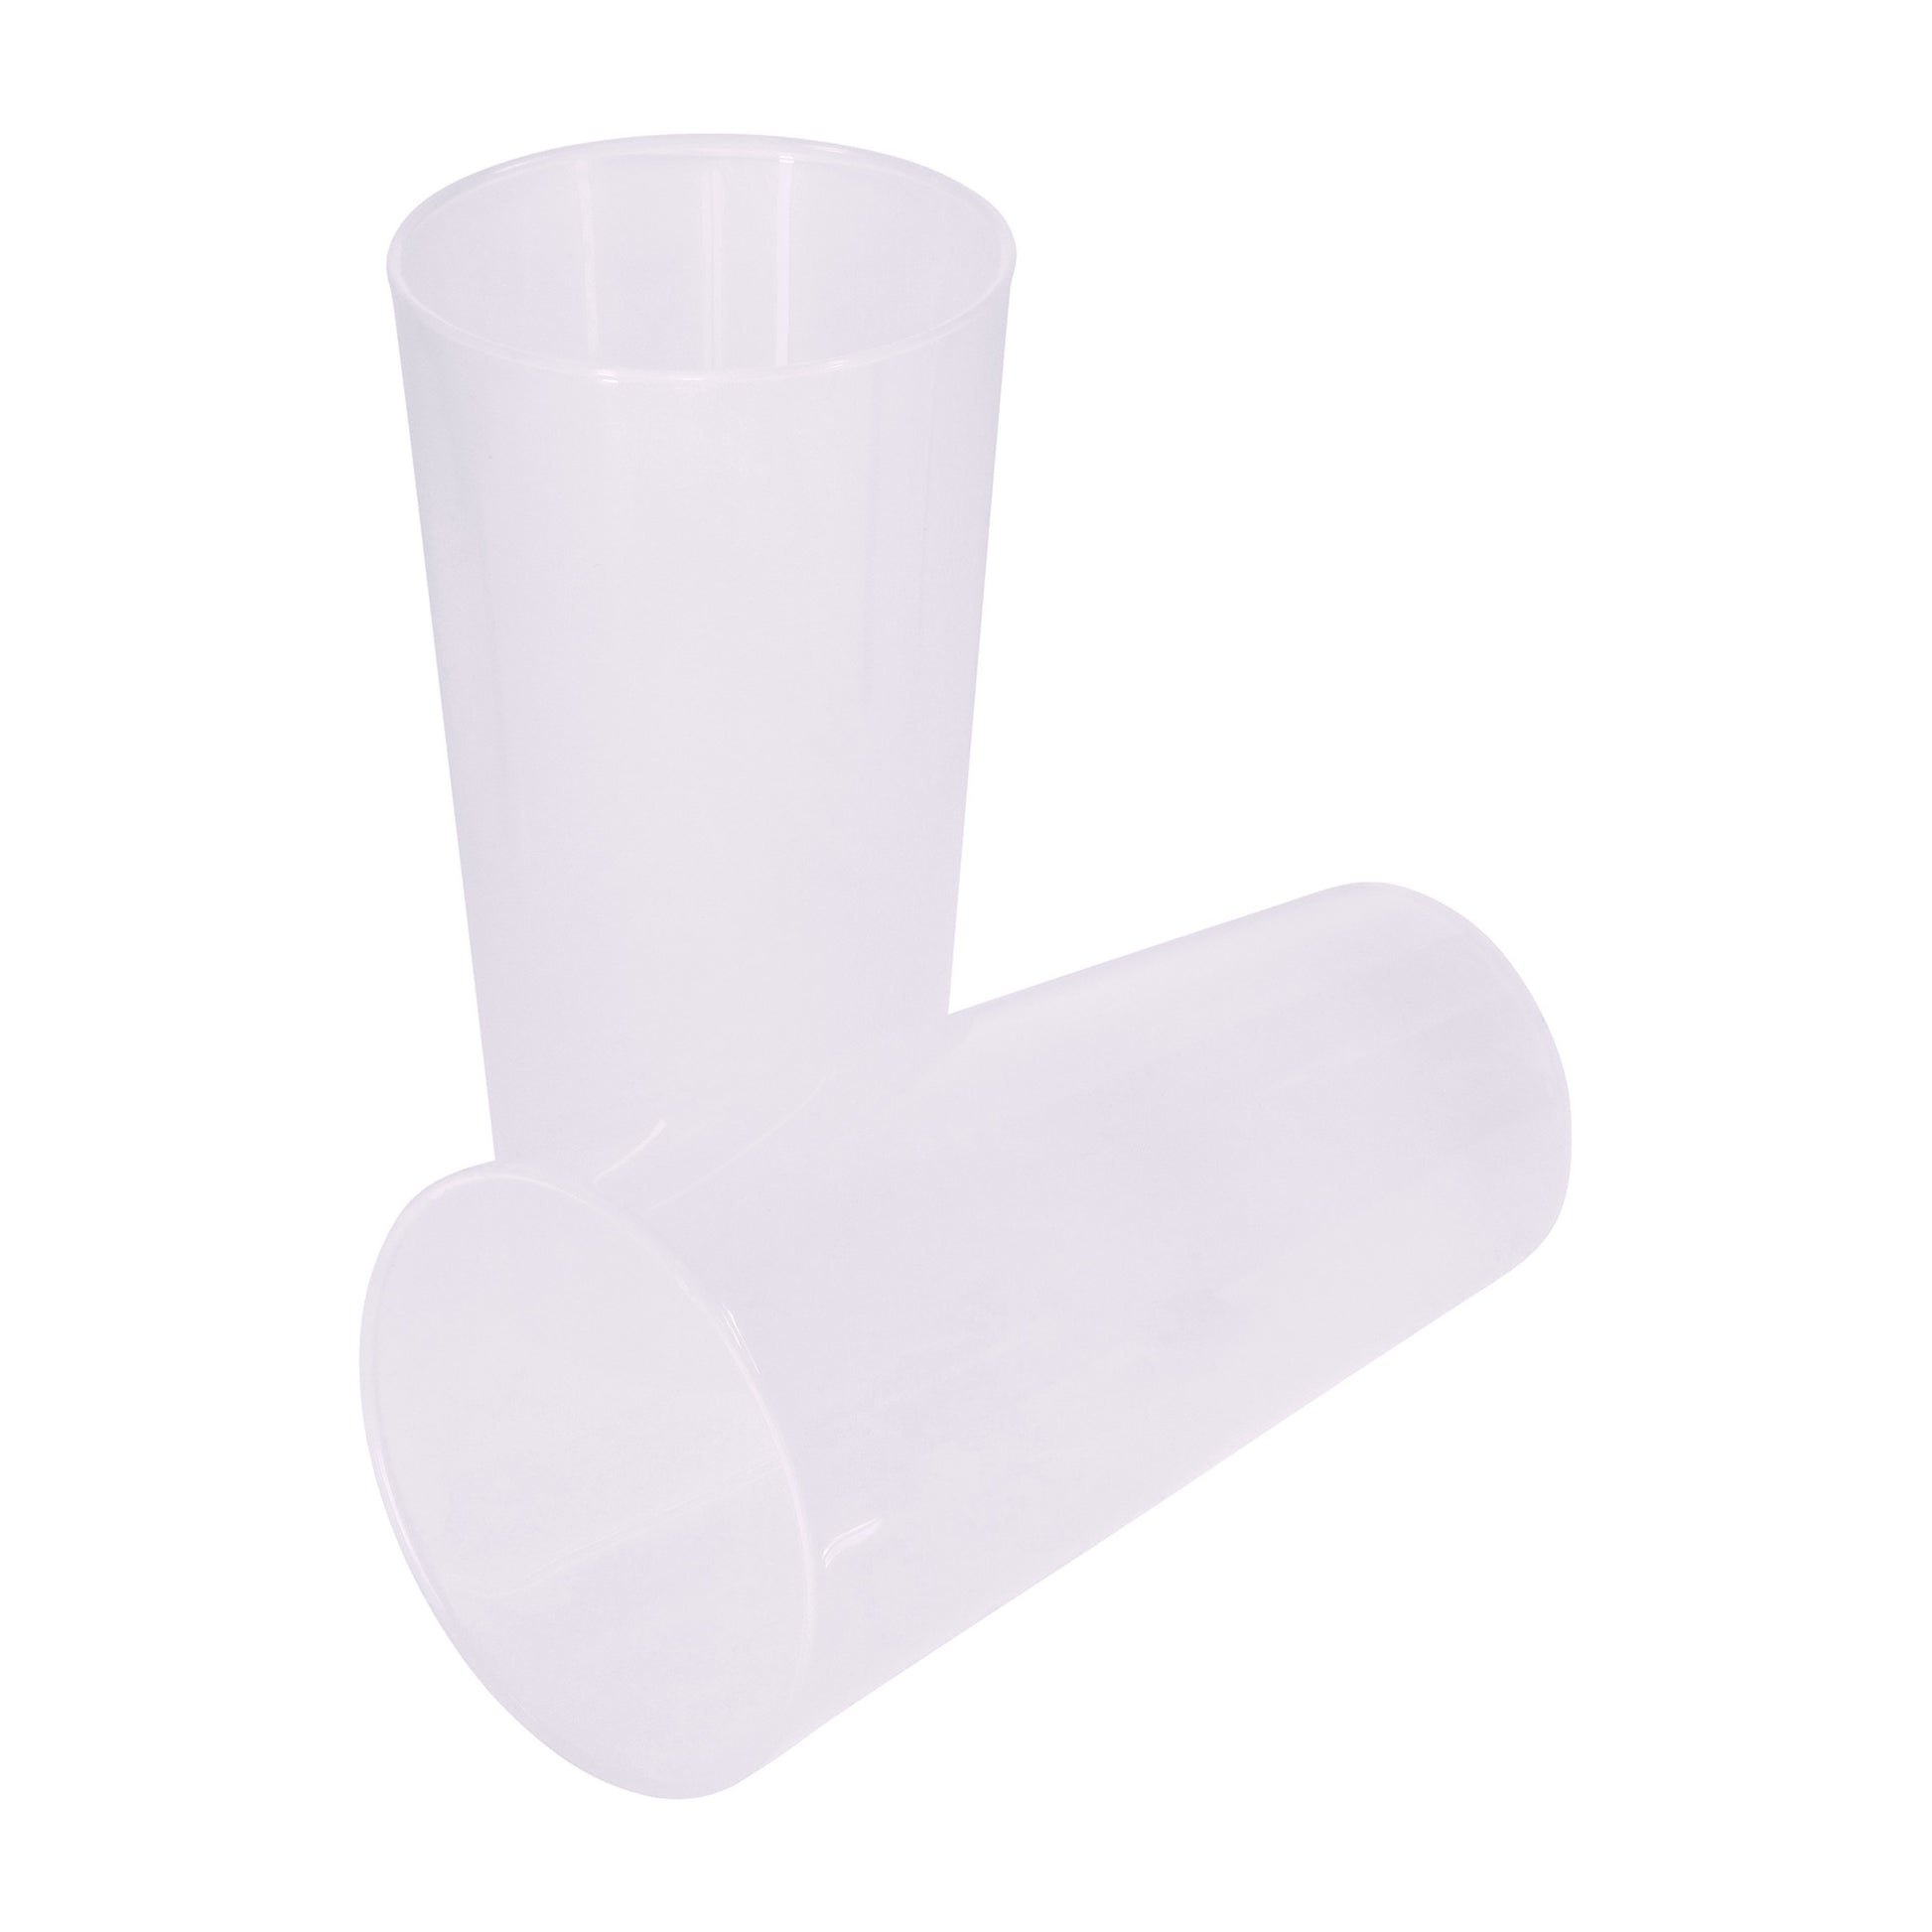 Plastic Cup Reusable PP Clear 330ml Ø7,9cm (50 Units)